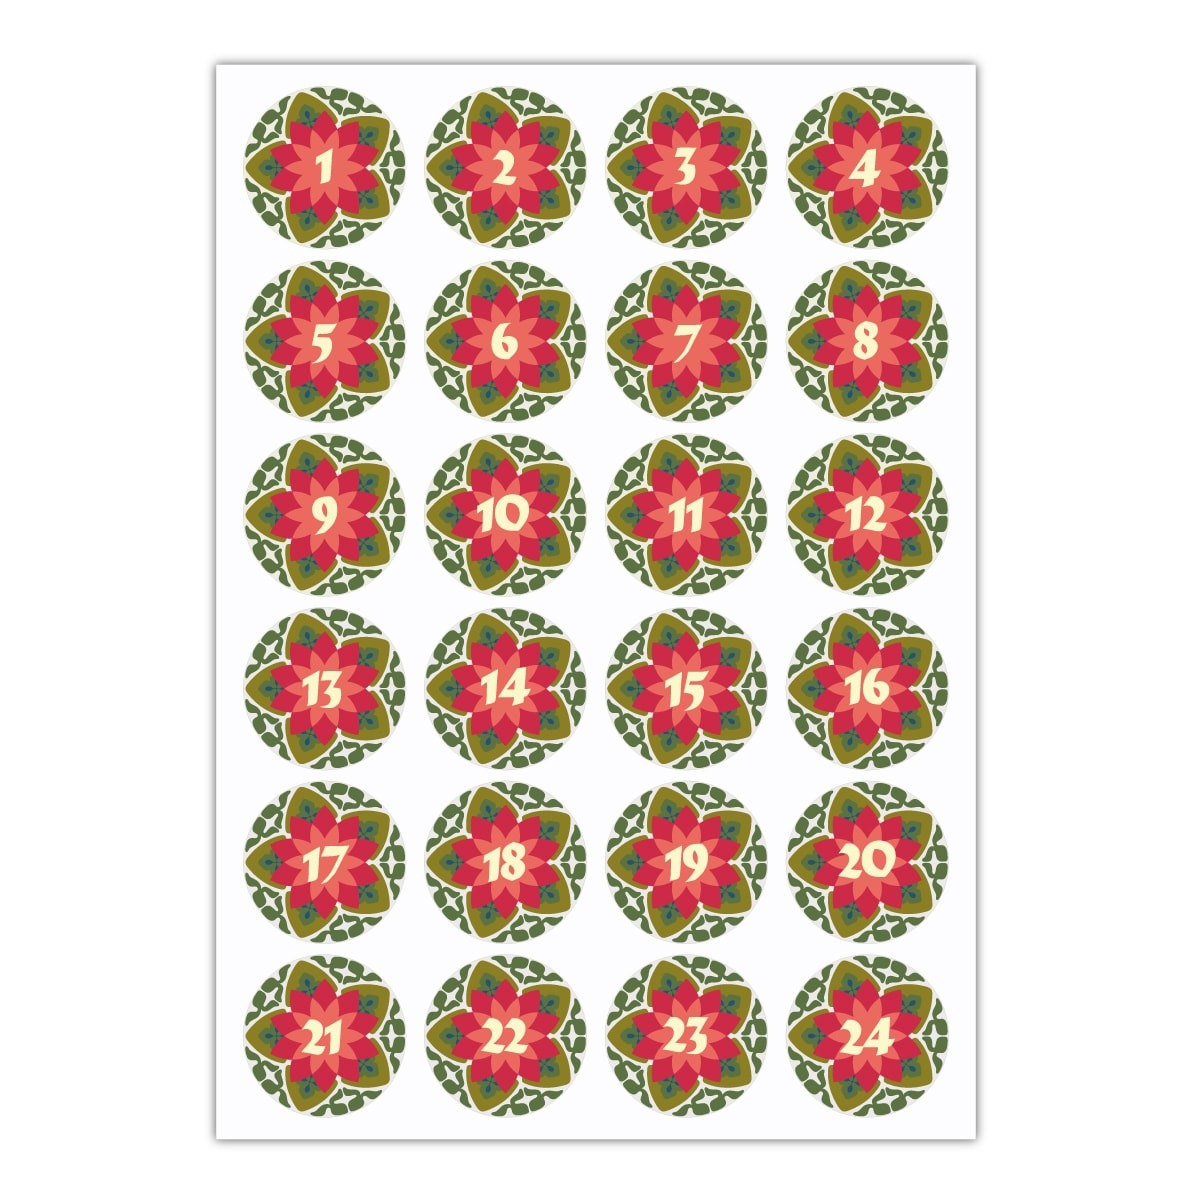 Kartenkaufrausch Sticker in rot: 24 Jugendstil Advents Aufkleber